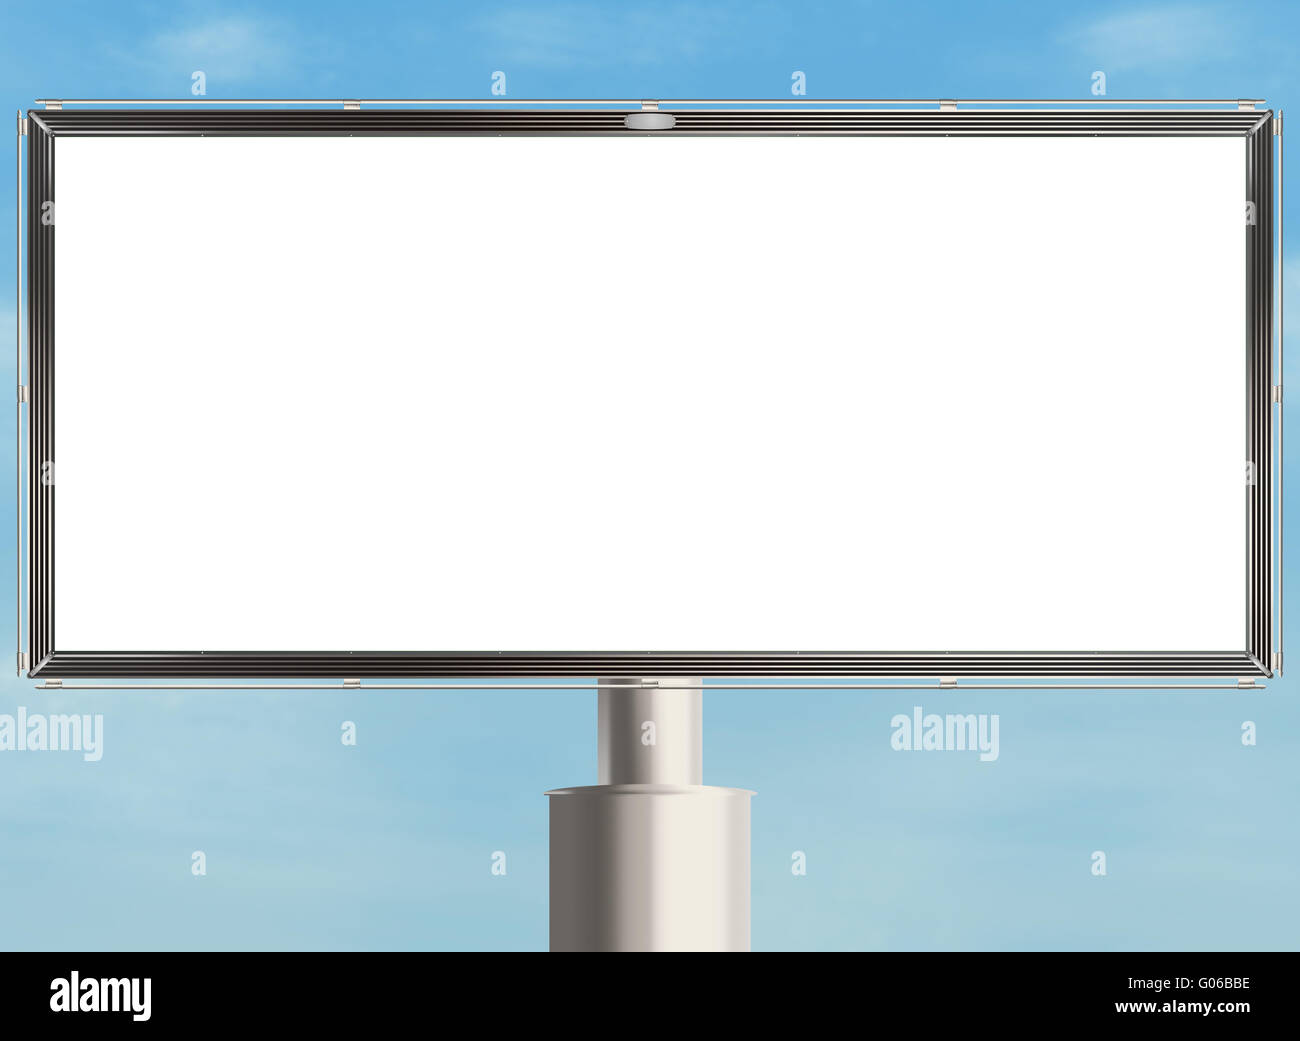 Leeren Plakatwand mit weißen textfreiraum auf der Himmelshintergrund. Raster-Abbildung. Stockfoto